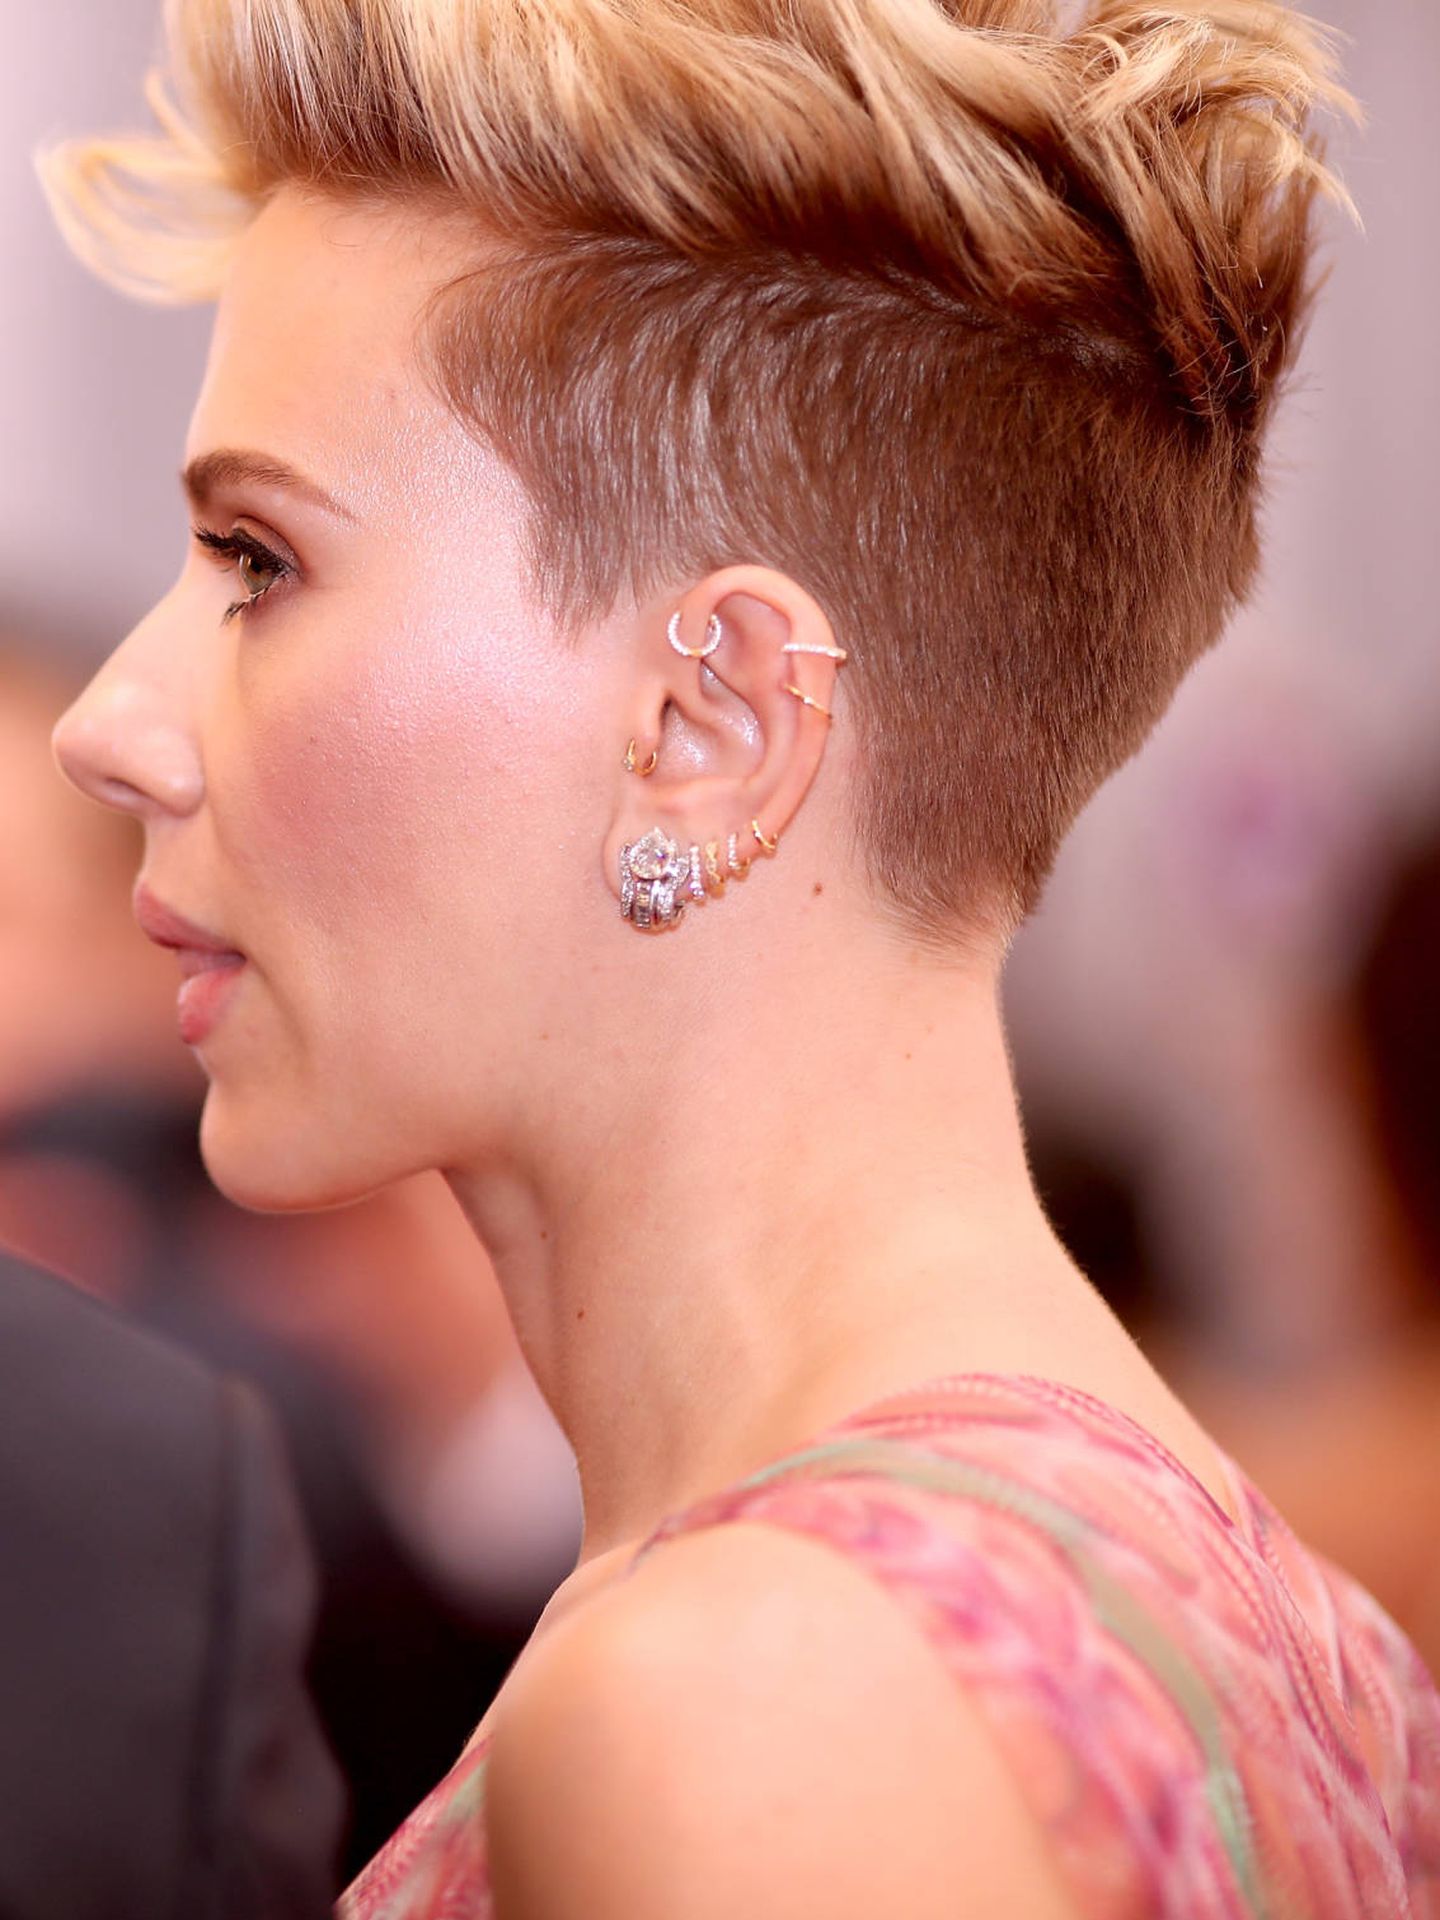 Las orejas de Scarlett Johansson tienen casi todos los piercings... ¿Se hará el del outer conch? (Getty)